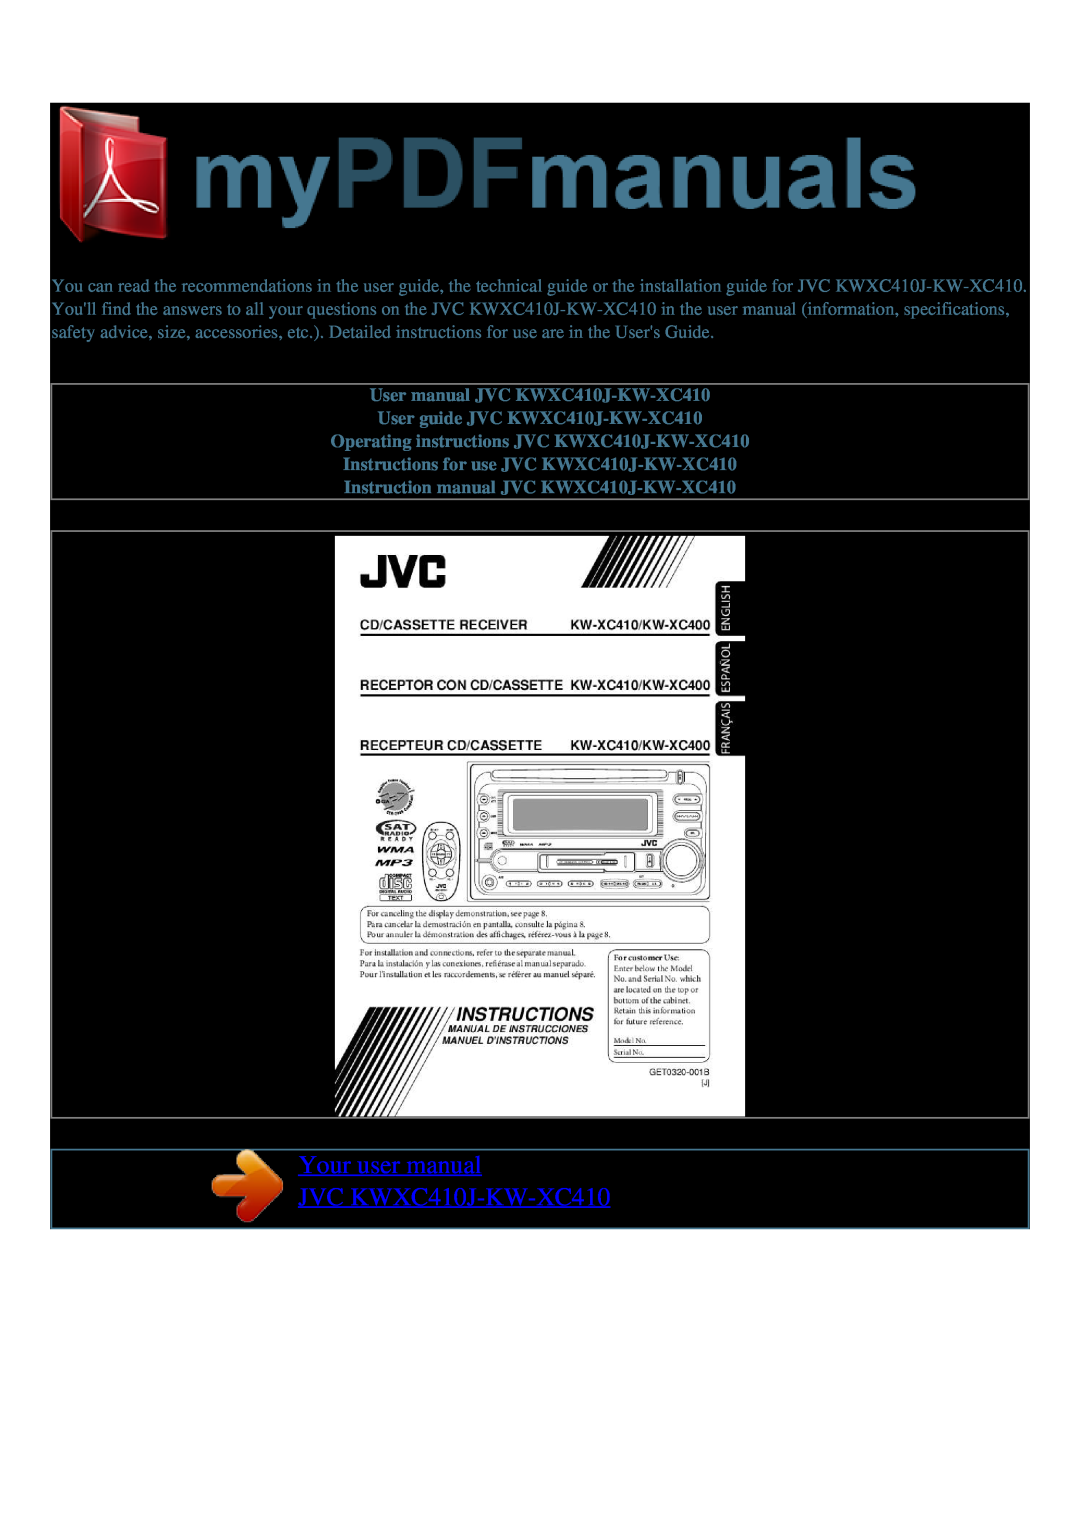 JVC user manual User guide JVC KWXC410J-KW-XC410, Operating instructions JVC KWXC410J-KW-XC410 